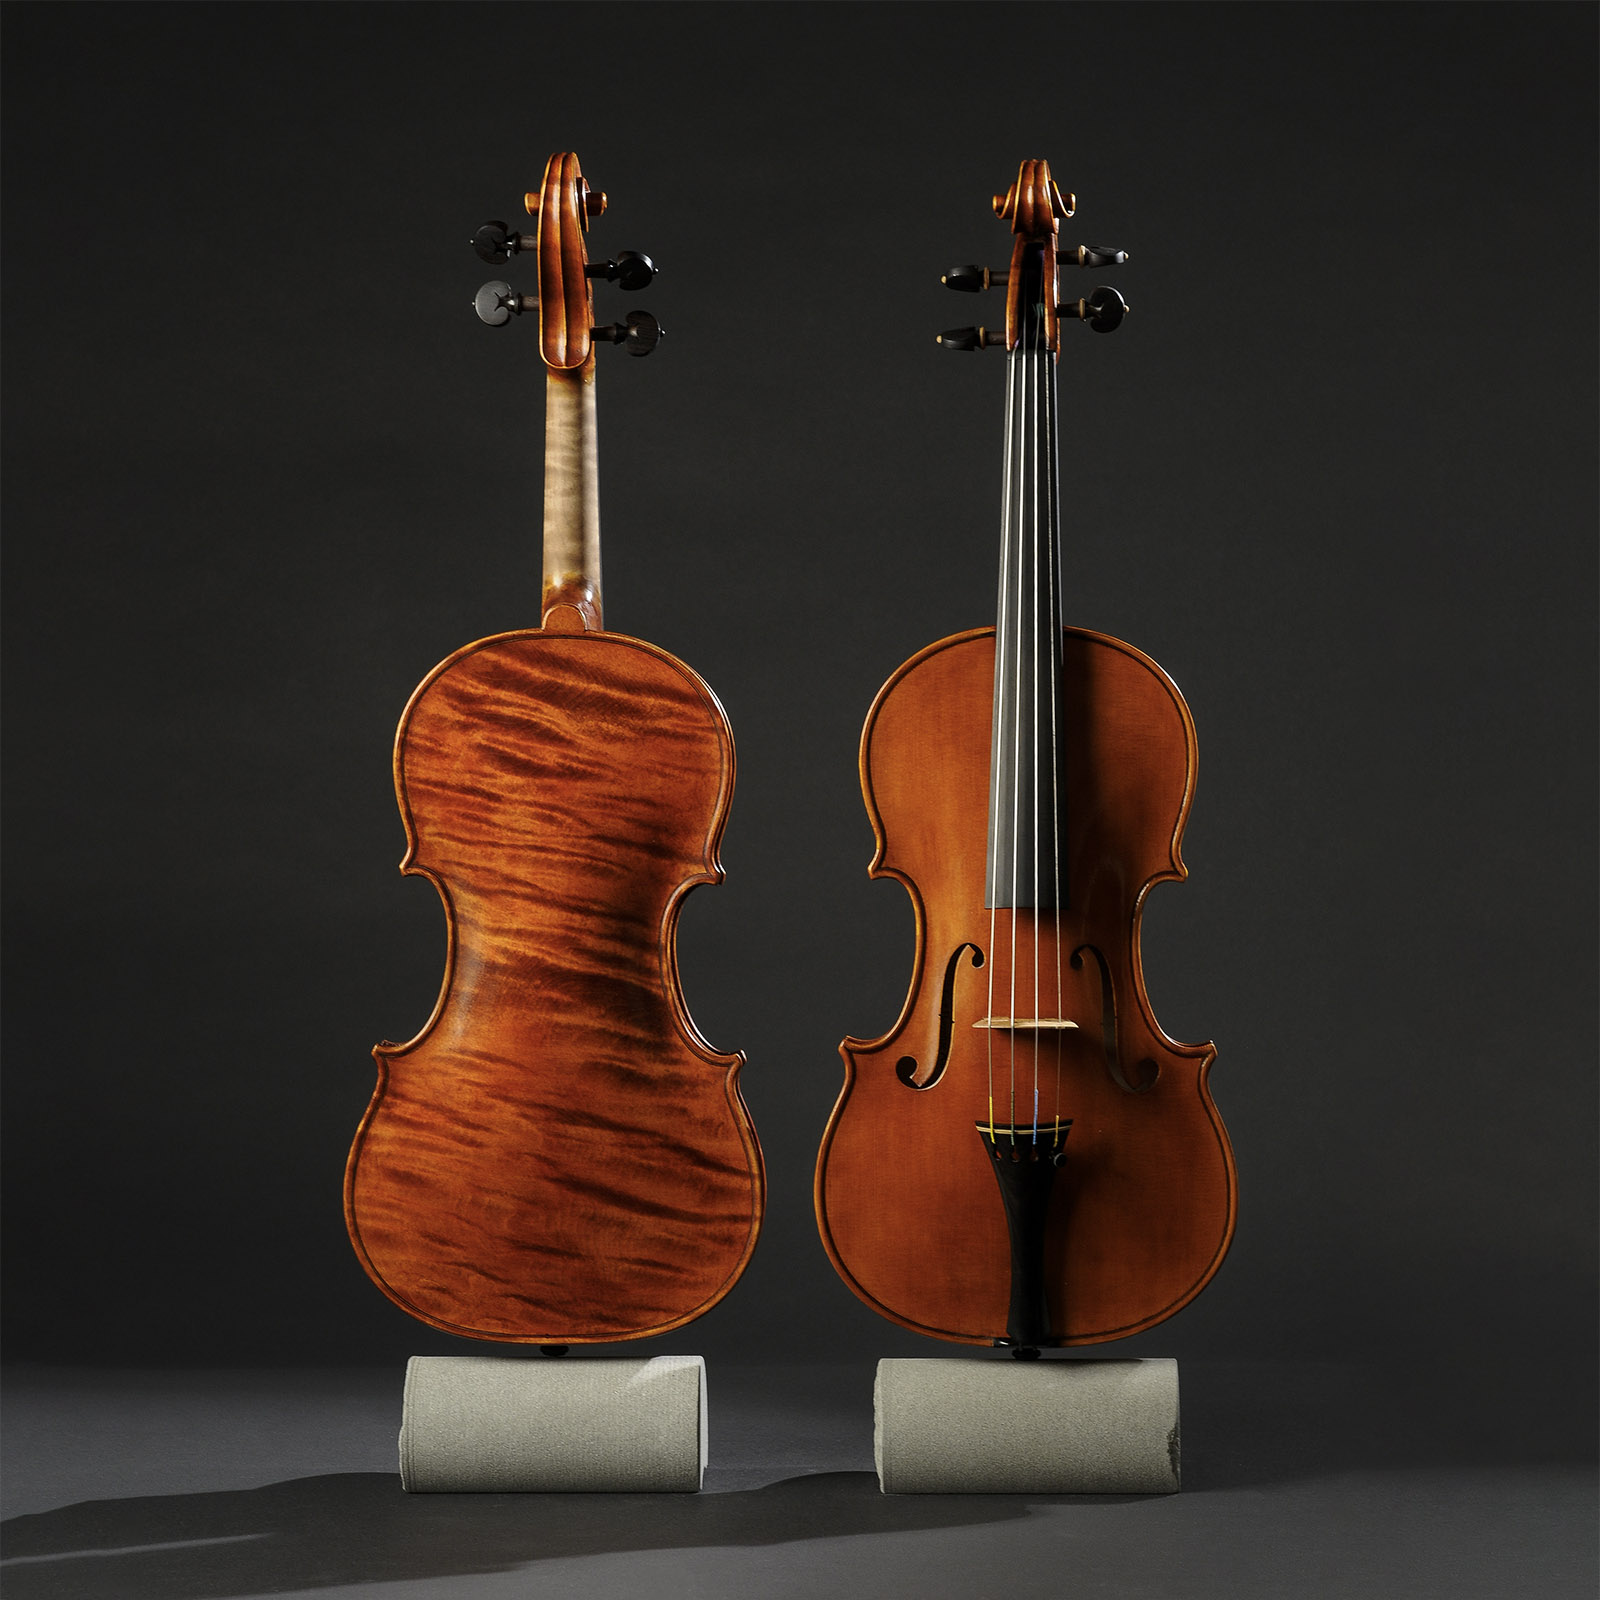 Stradivari & Del Gesù Stradivari & Mod. Del Gesù “The Twins“ - Image 7